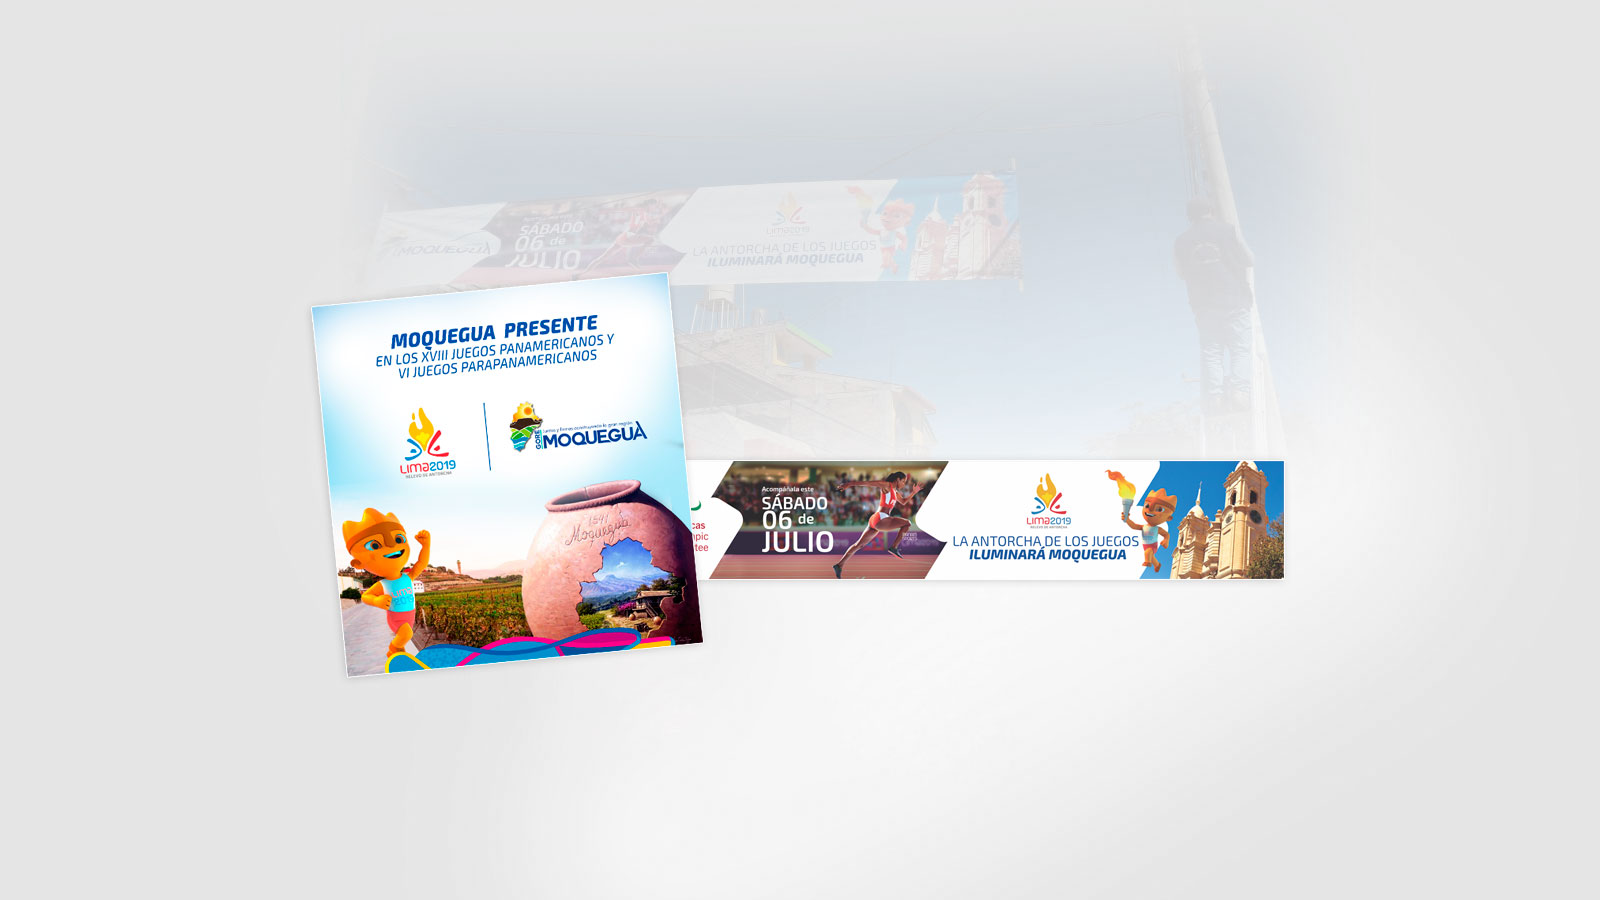 Desarrollo de Publicidad para los juegos panamericanos moquegua 2019 por AQP Business